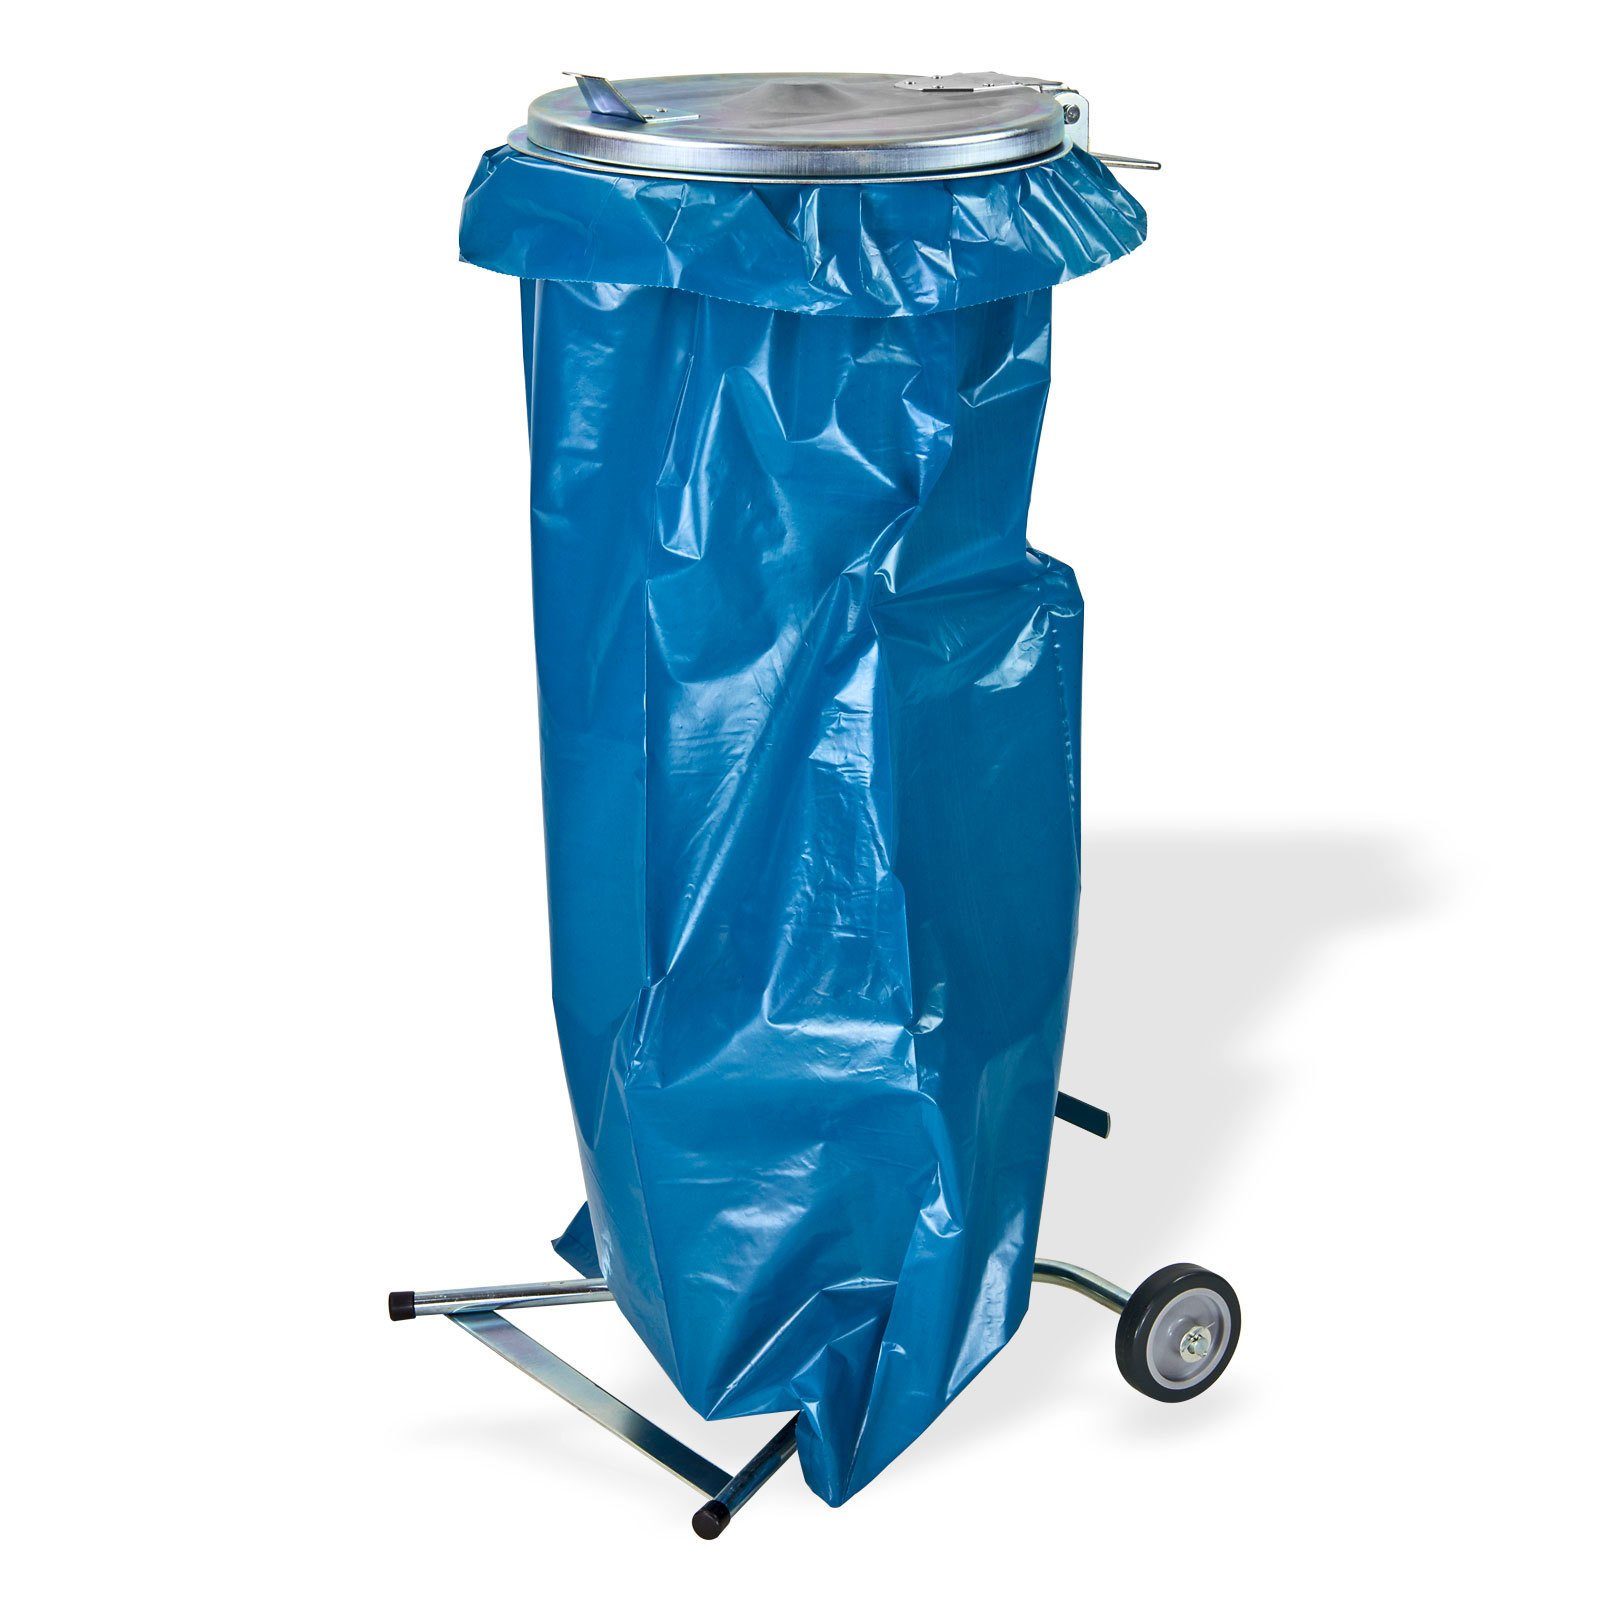 DEMA Müllsackständer Praktischer Metall Müllsackhalter - Müllsackständer für Kunststoff- oder Papiersäcke bis 120 Liter